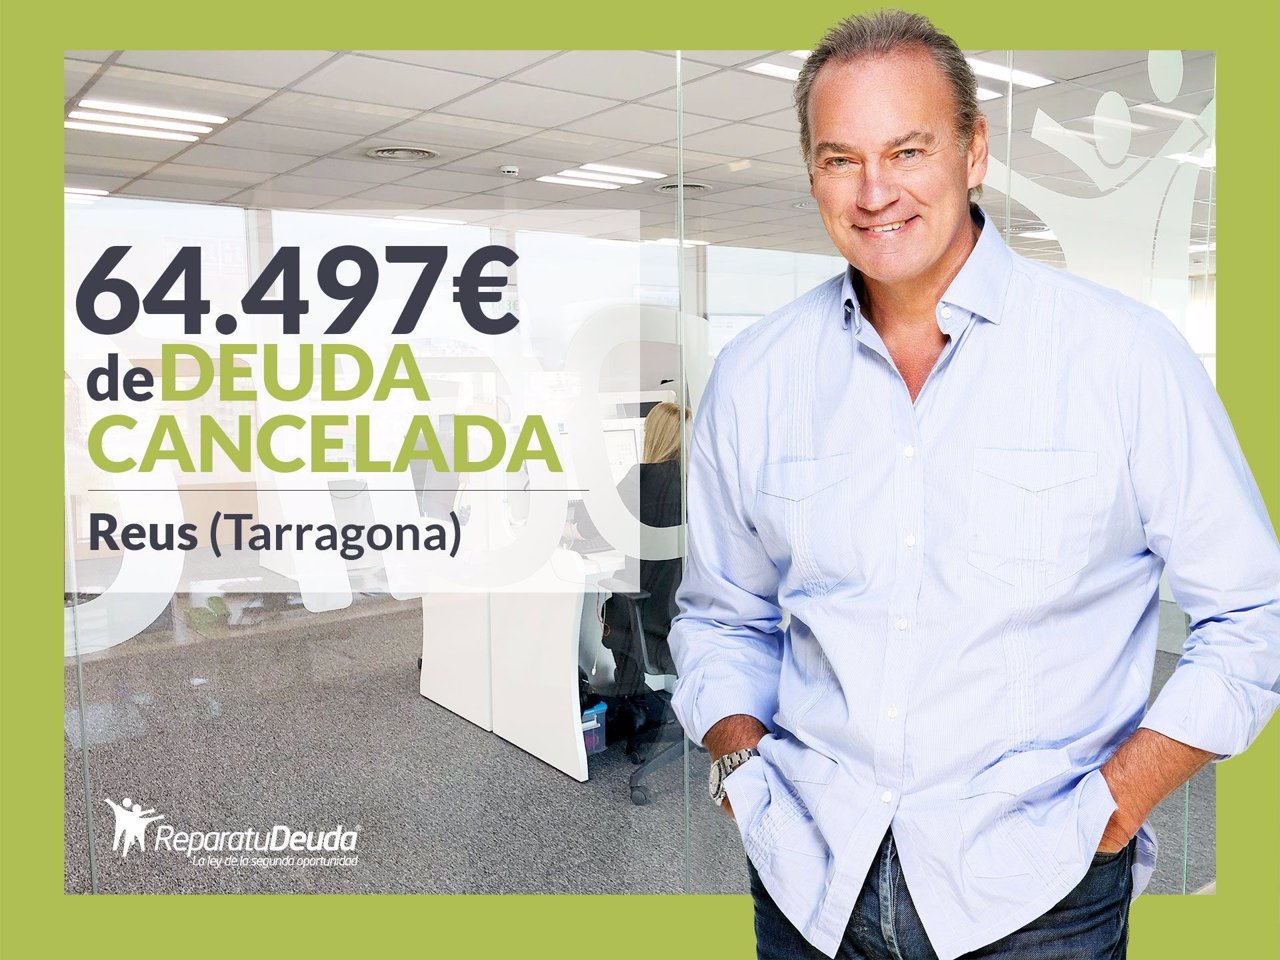 COMUNICADO: Repara tu Deuda Abogados cancela 64.497€ en Reus (Tarragona) gracias a la Ley de Segunda Oportunidad